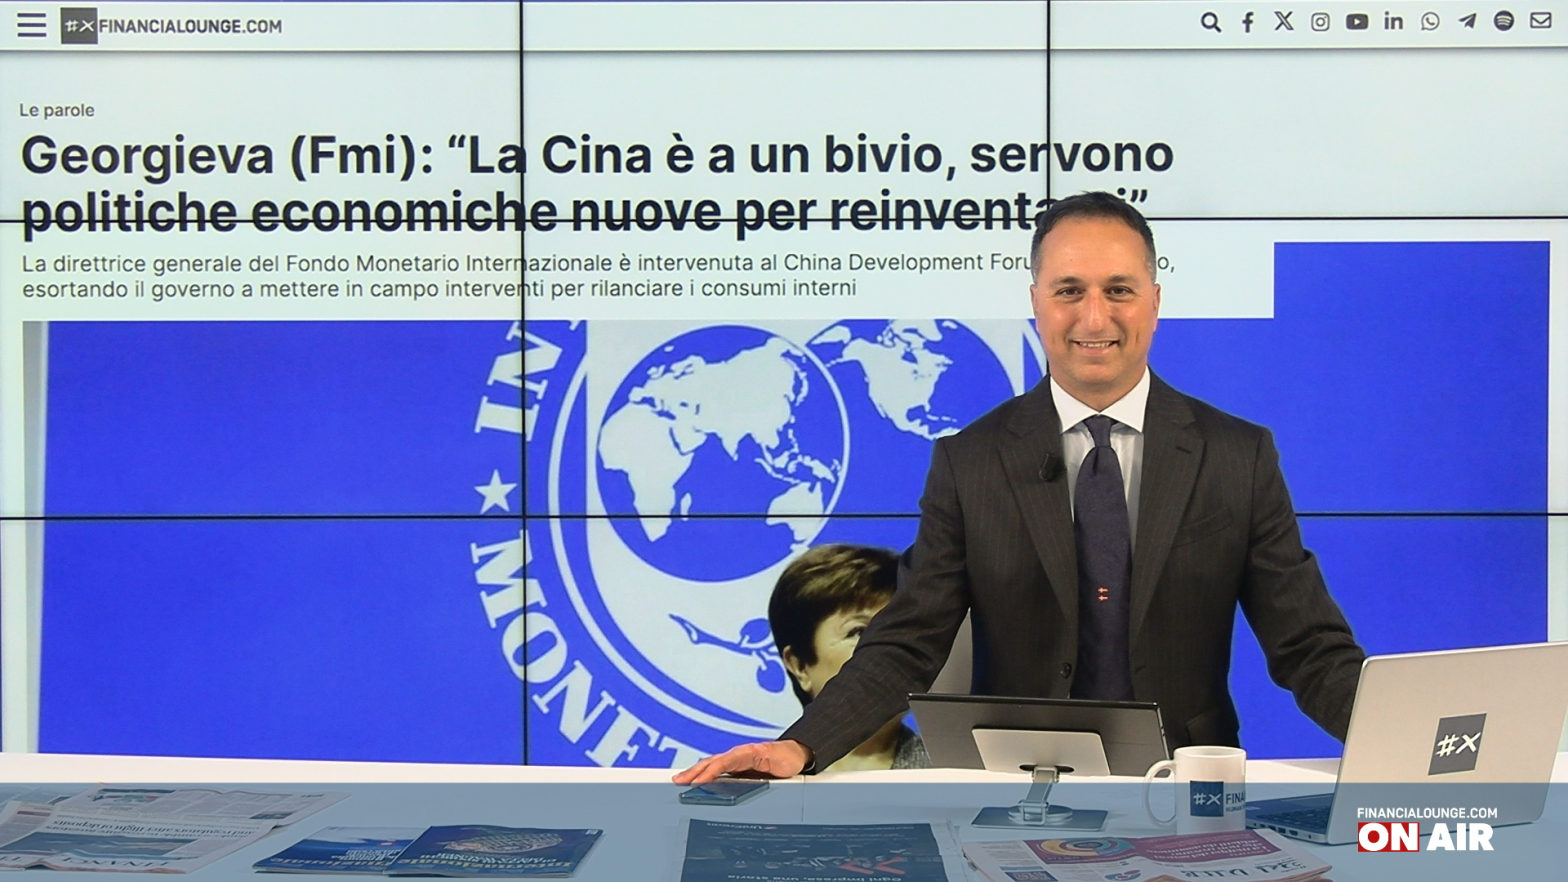 financialounge.com Il Fmi sprona la Cina, a Piazza Affari bene Ferrari, Leonardo e Saipem - Edizione del 25 marzo